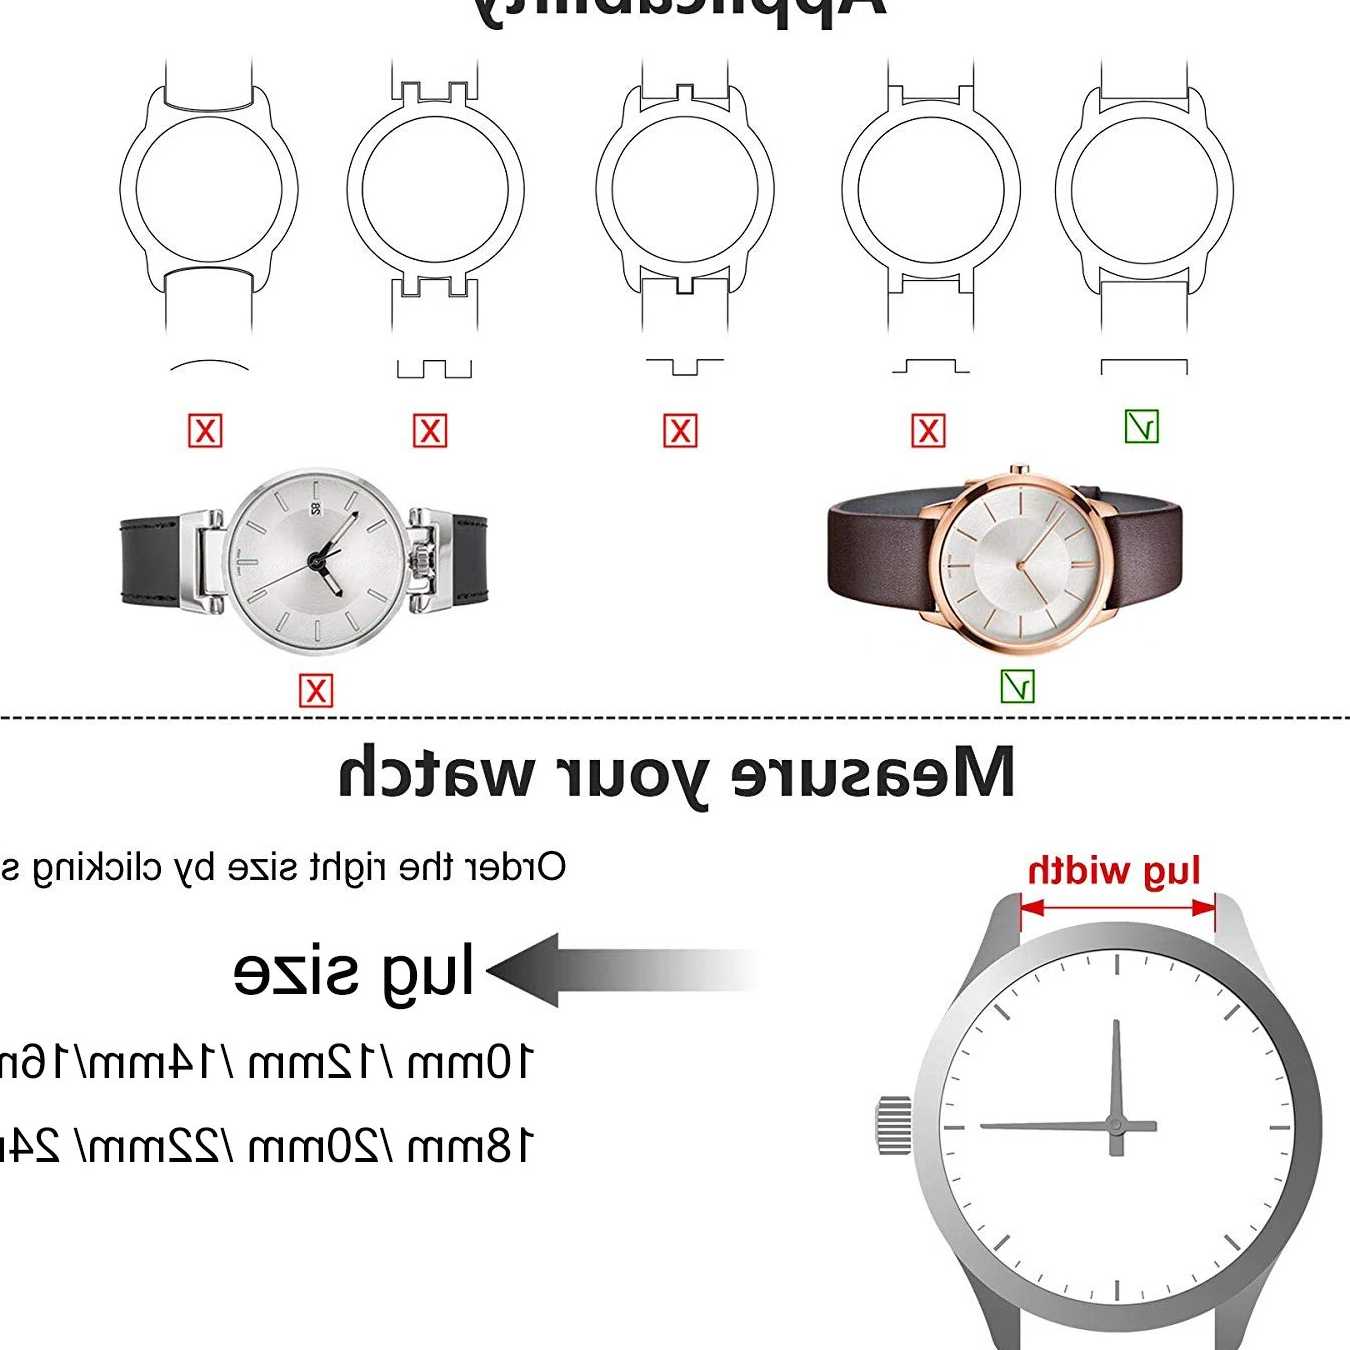 Opinie Pasek Milanese 8-24mm - siateczkowy pasek na zegarki DW STYL… sklep online